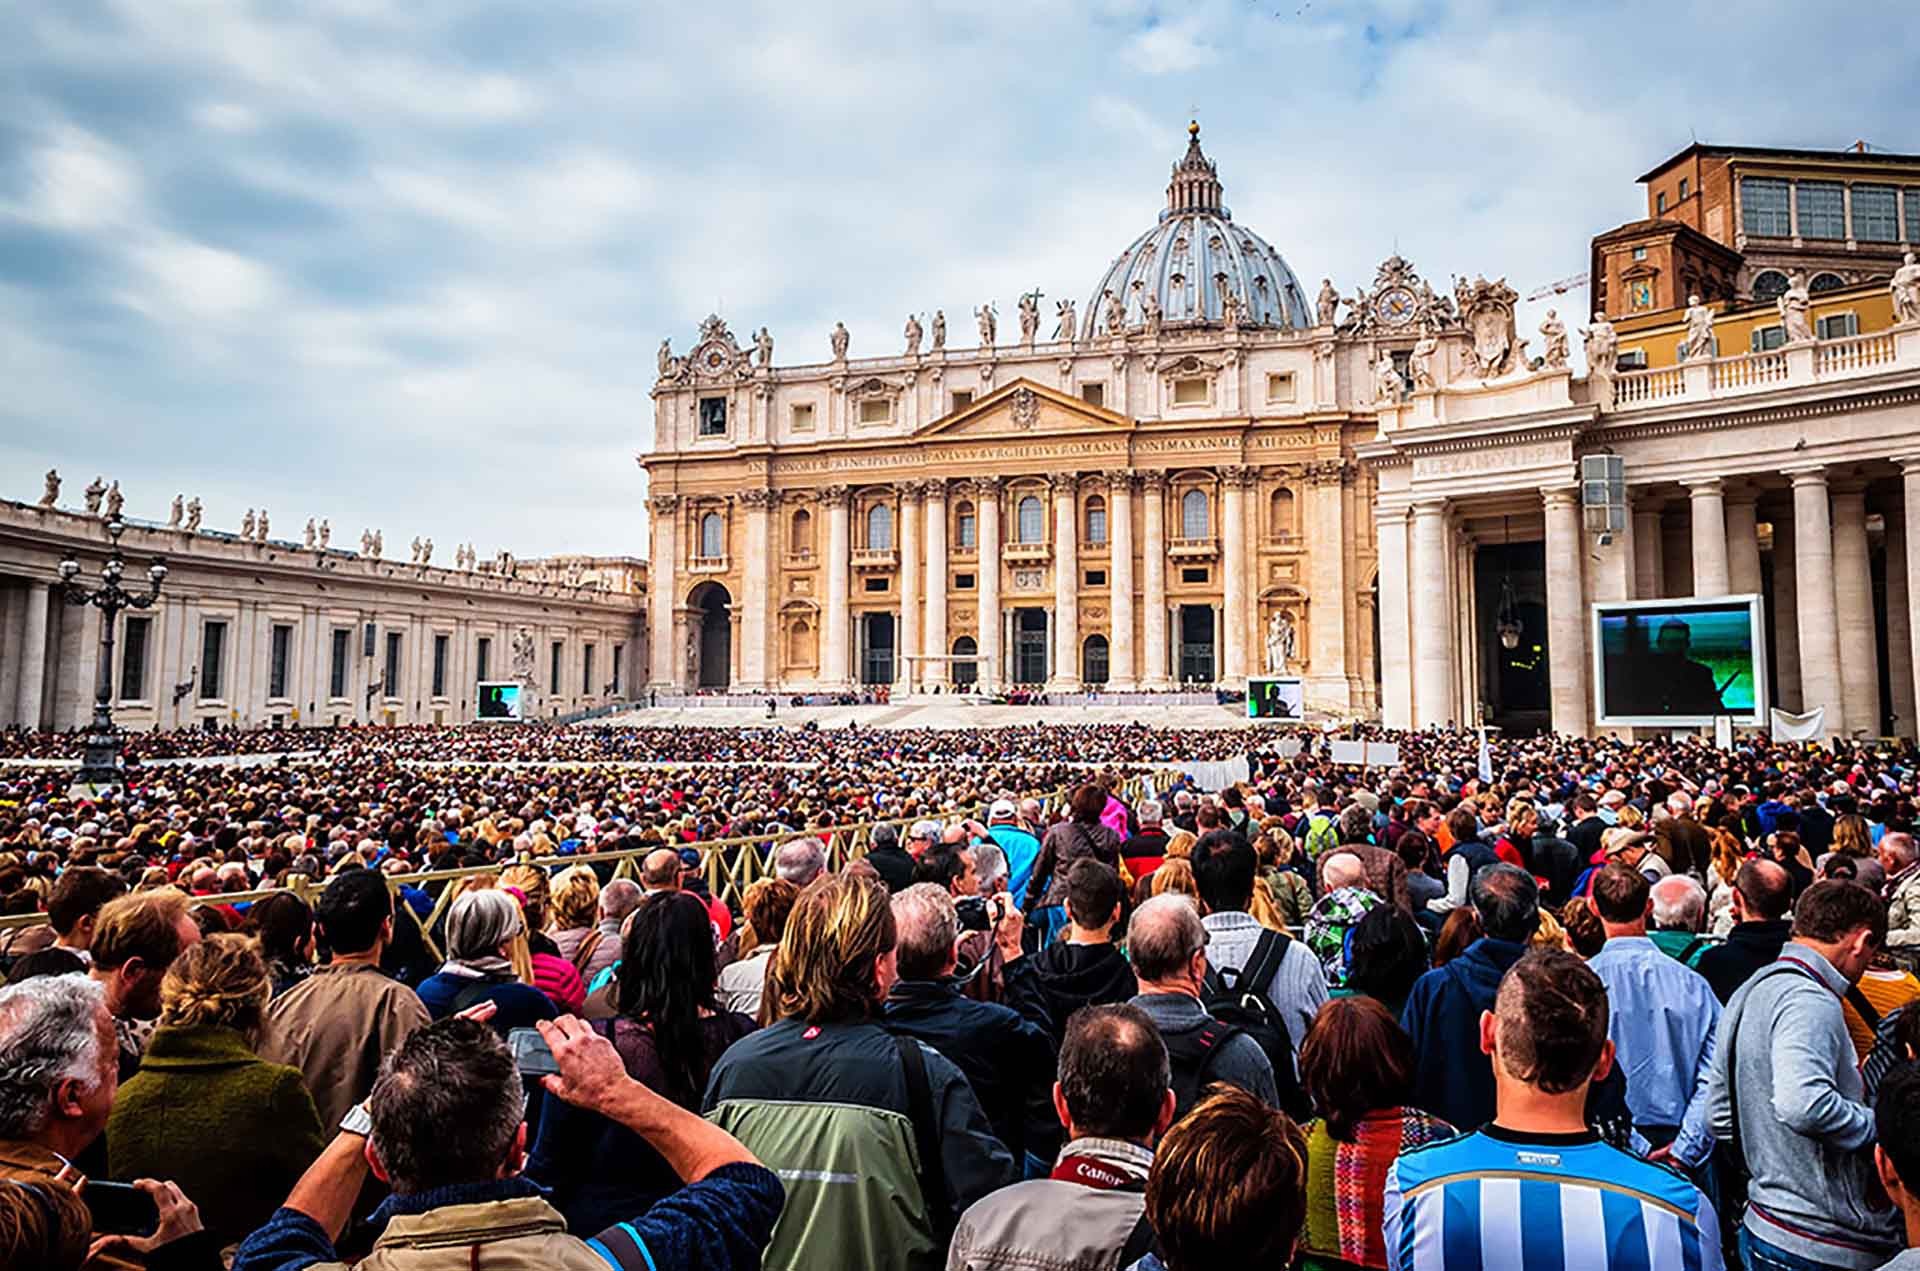 Vatican là quốc gia có số lượng du khách cao nhất thế giới tính theo bình quân đầu người.  (Nguồn: SaigonTourist)